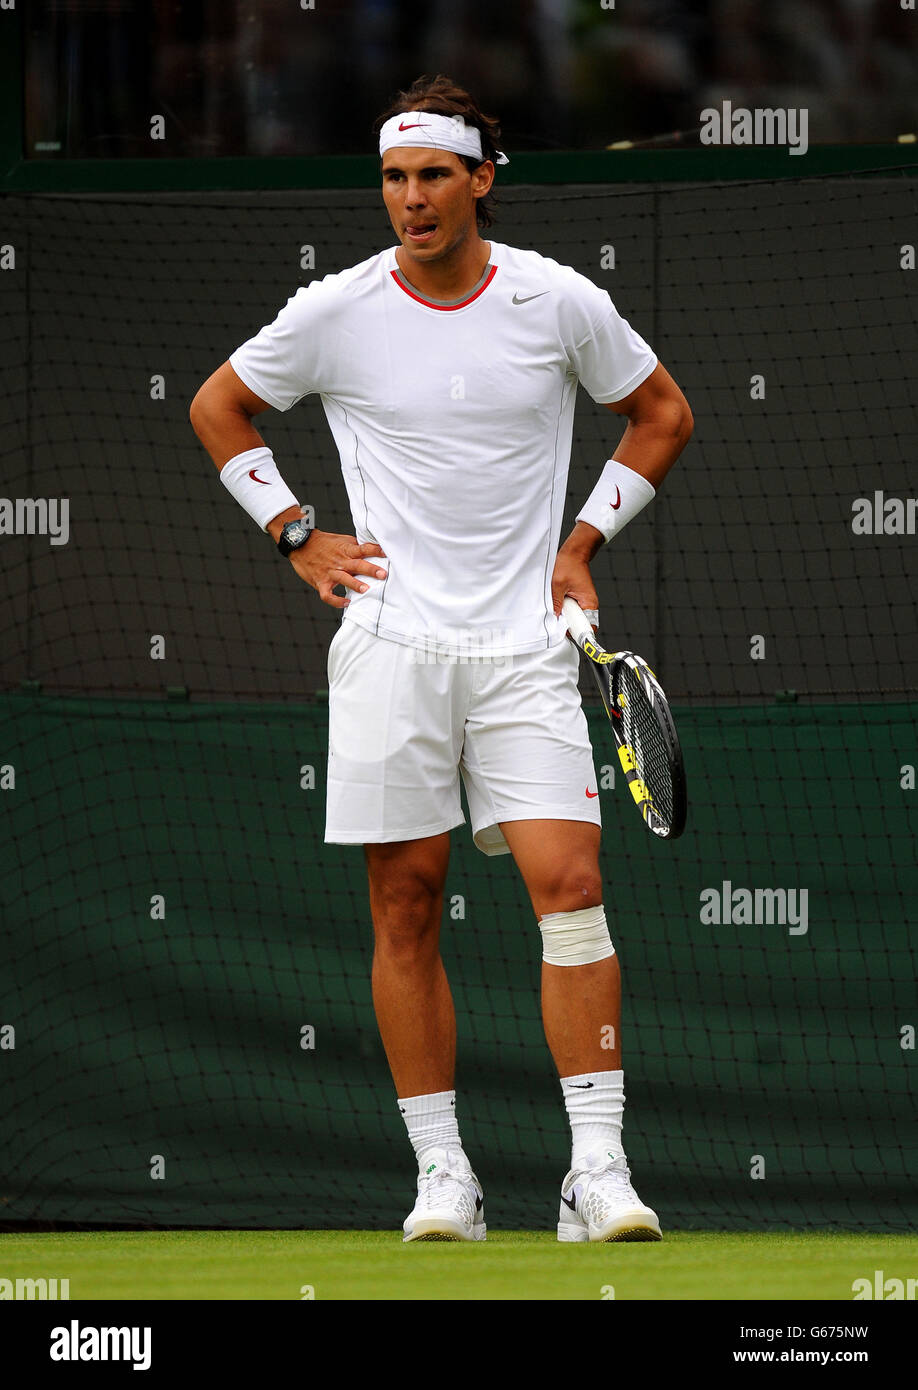 Il spagnolo Rafael Nadal reagisce durante la sua partita contro Steve Darcis del Belgio durante il giorno uno dei Campionati di Wimbledon all'All England Lawn Tennis and Croquet Club, Wimbledon. Foto Stock